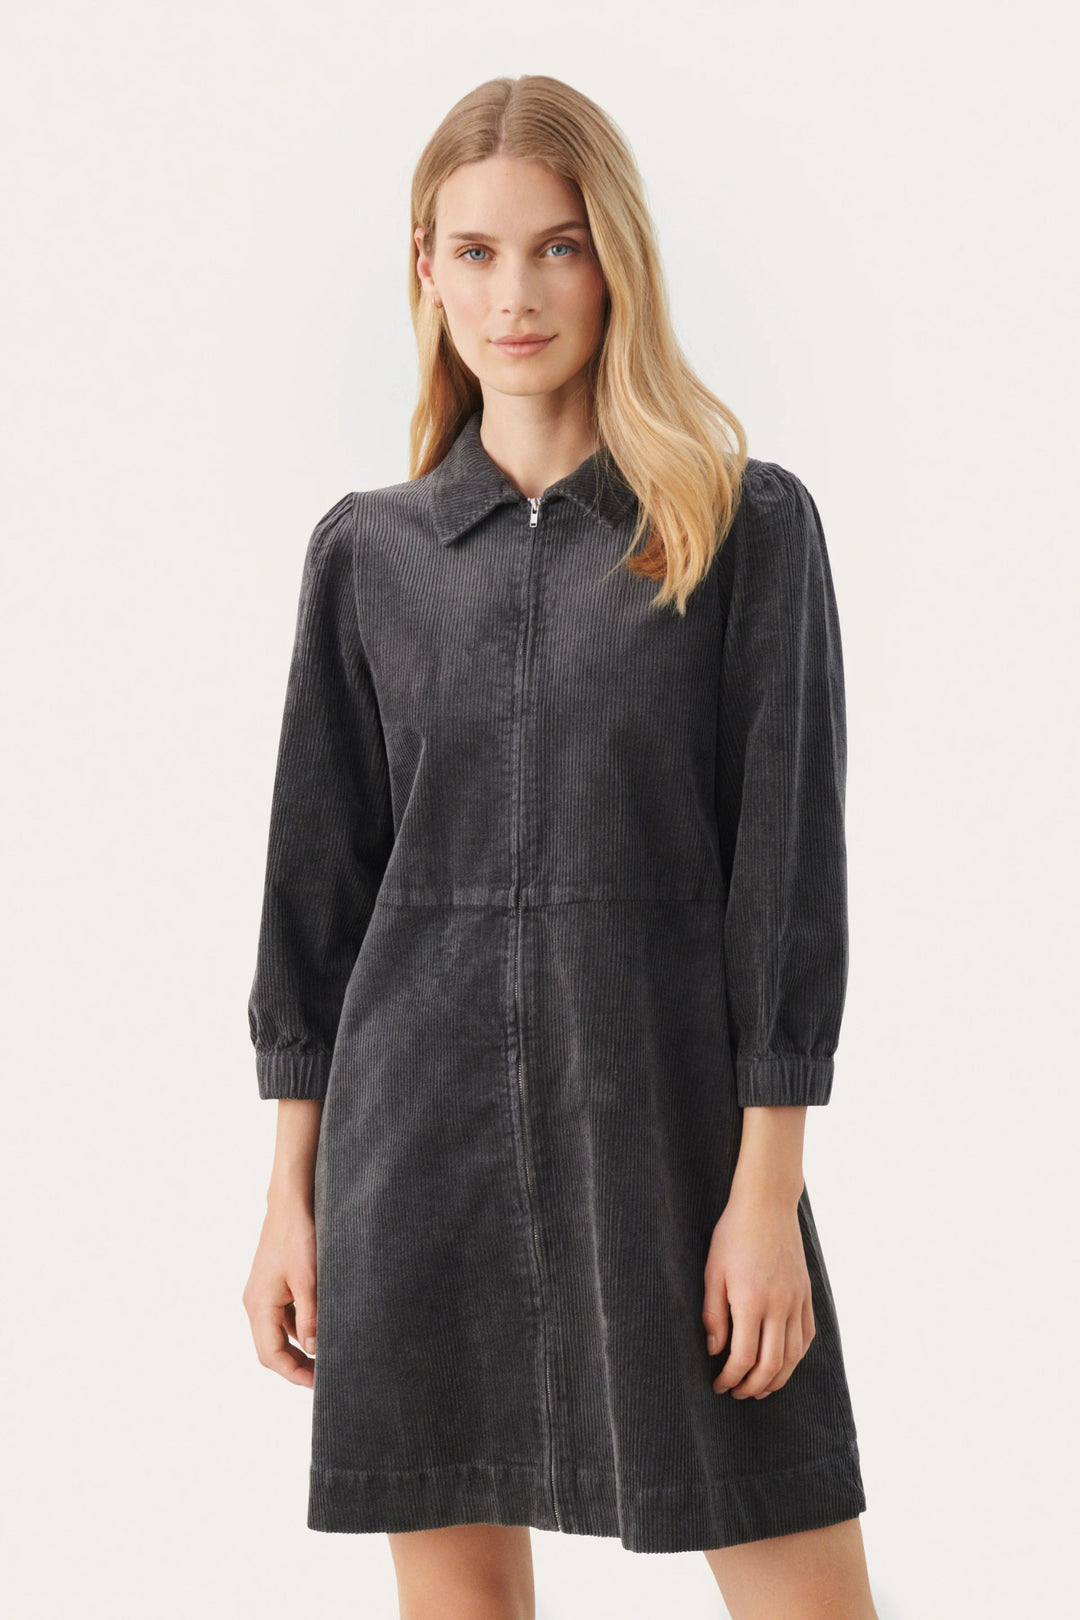 Eyvorspw Dress Magnet | Kjoler | Smuk - Dameklær på nett